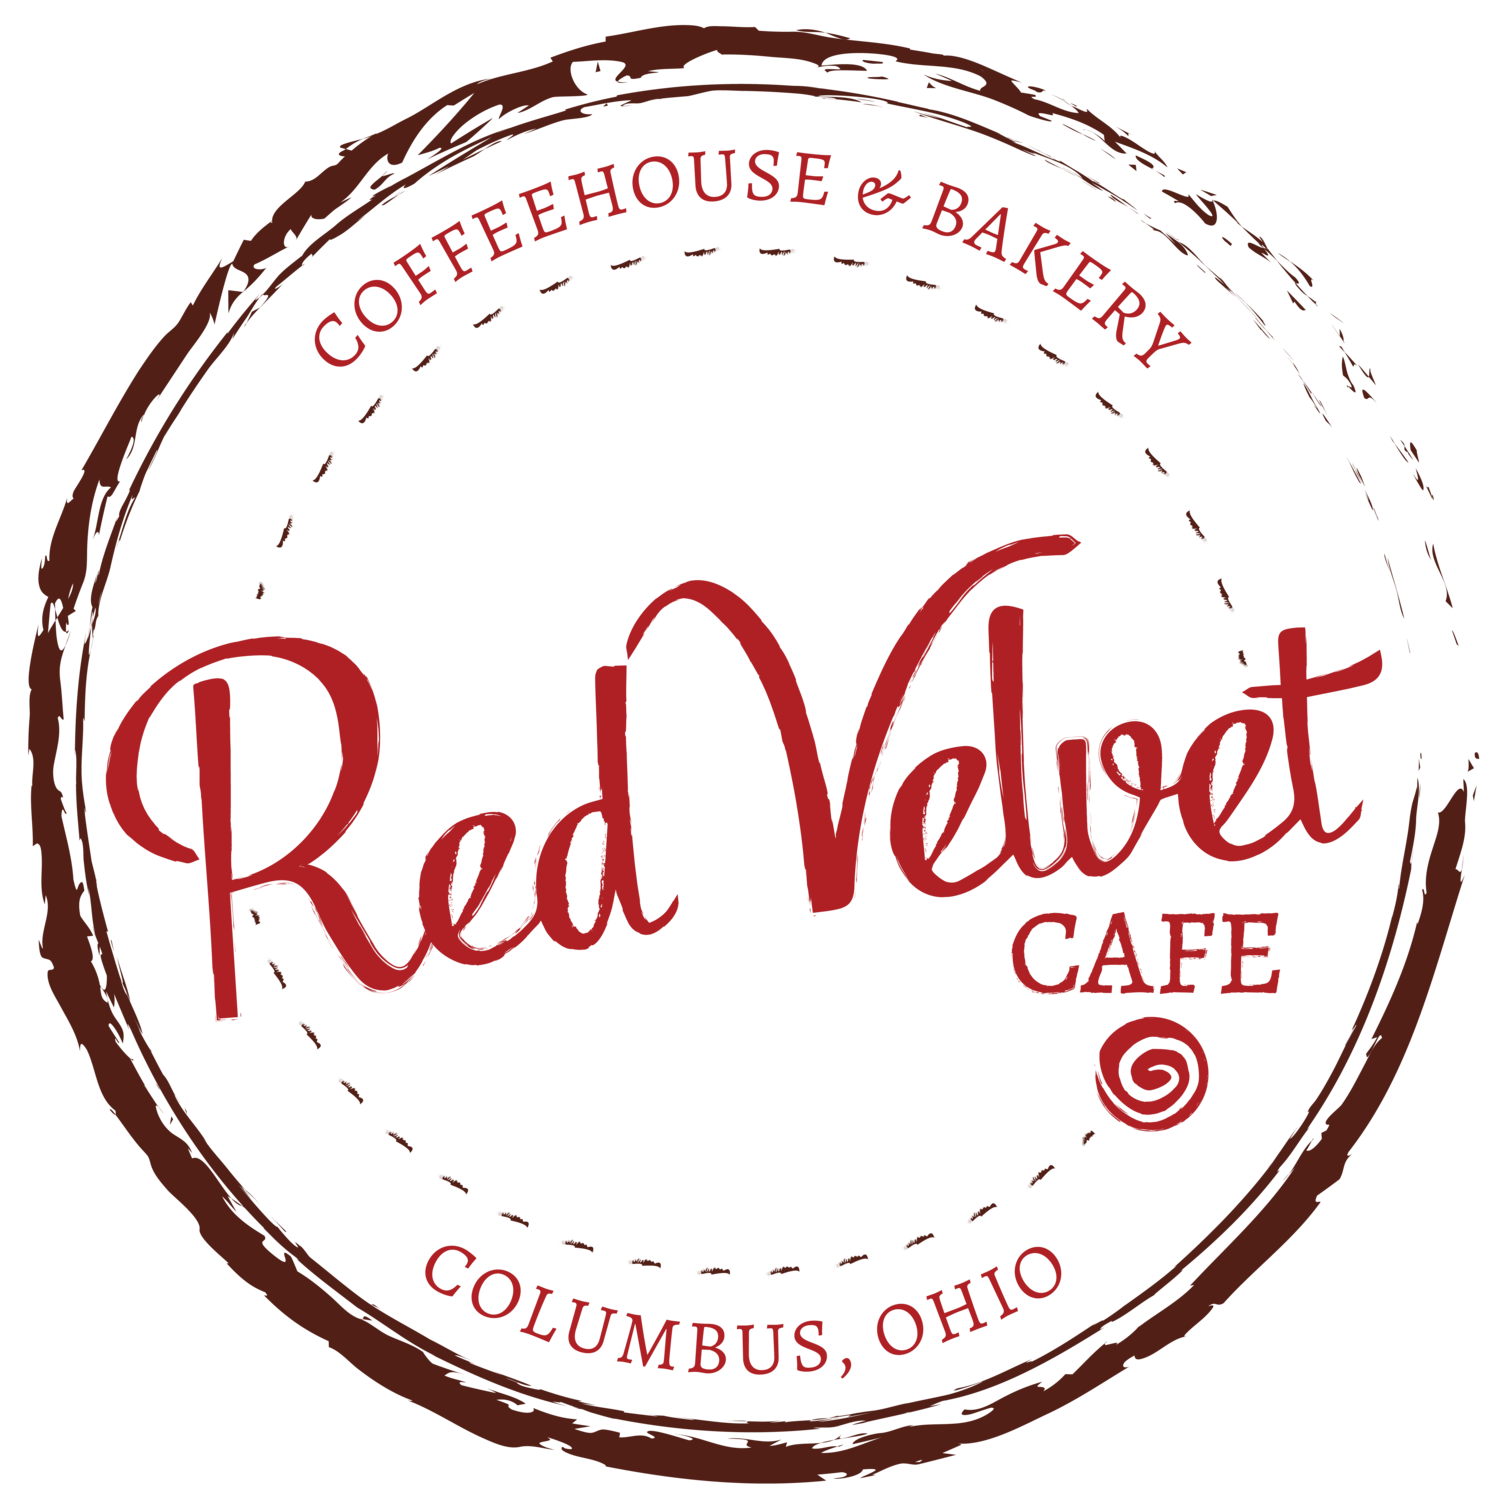 Ред вельвет надпись. Red Velvet логотип. Кафе с рыжим логотипом. Кафе Red Velvet. Oh my shop